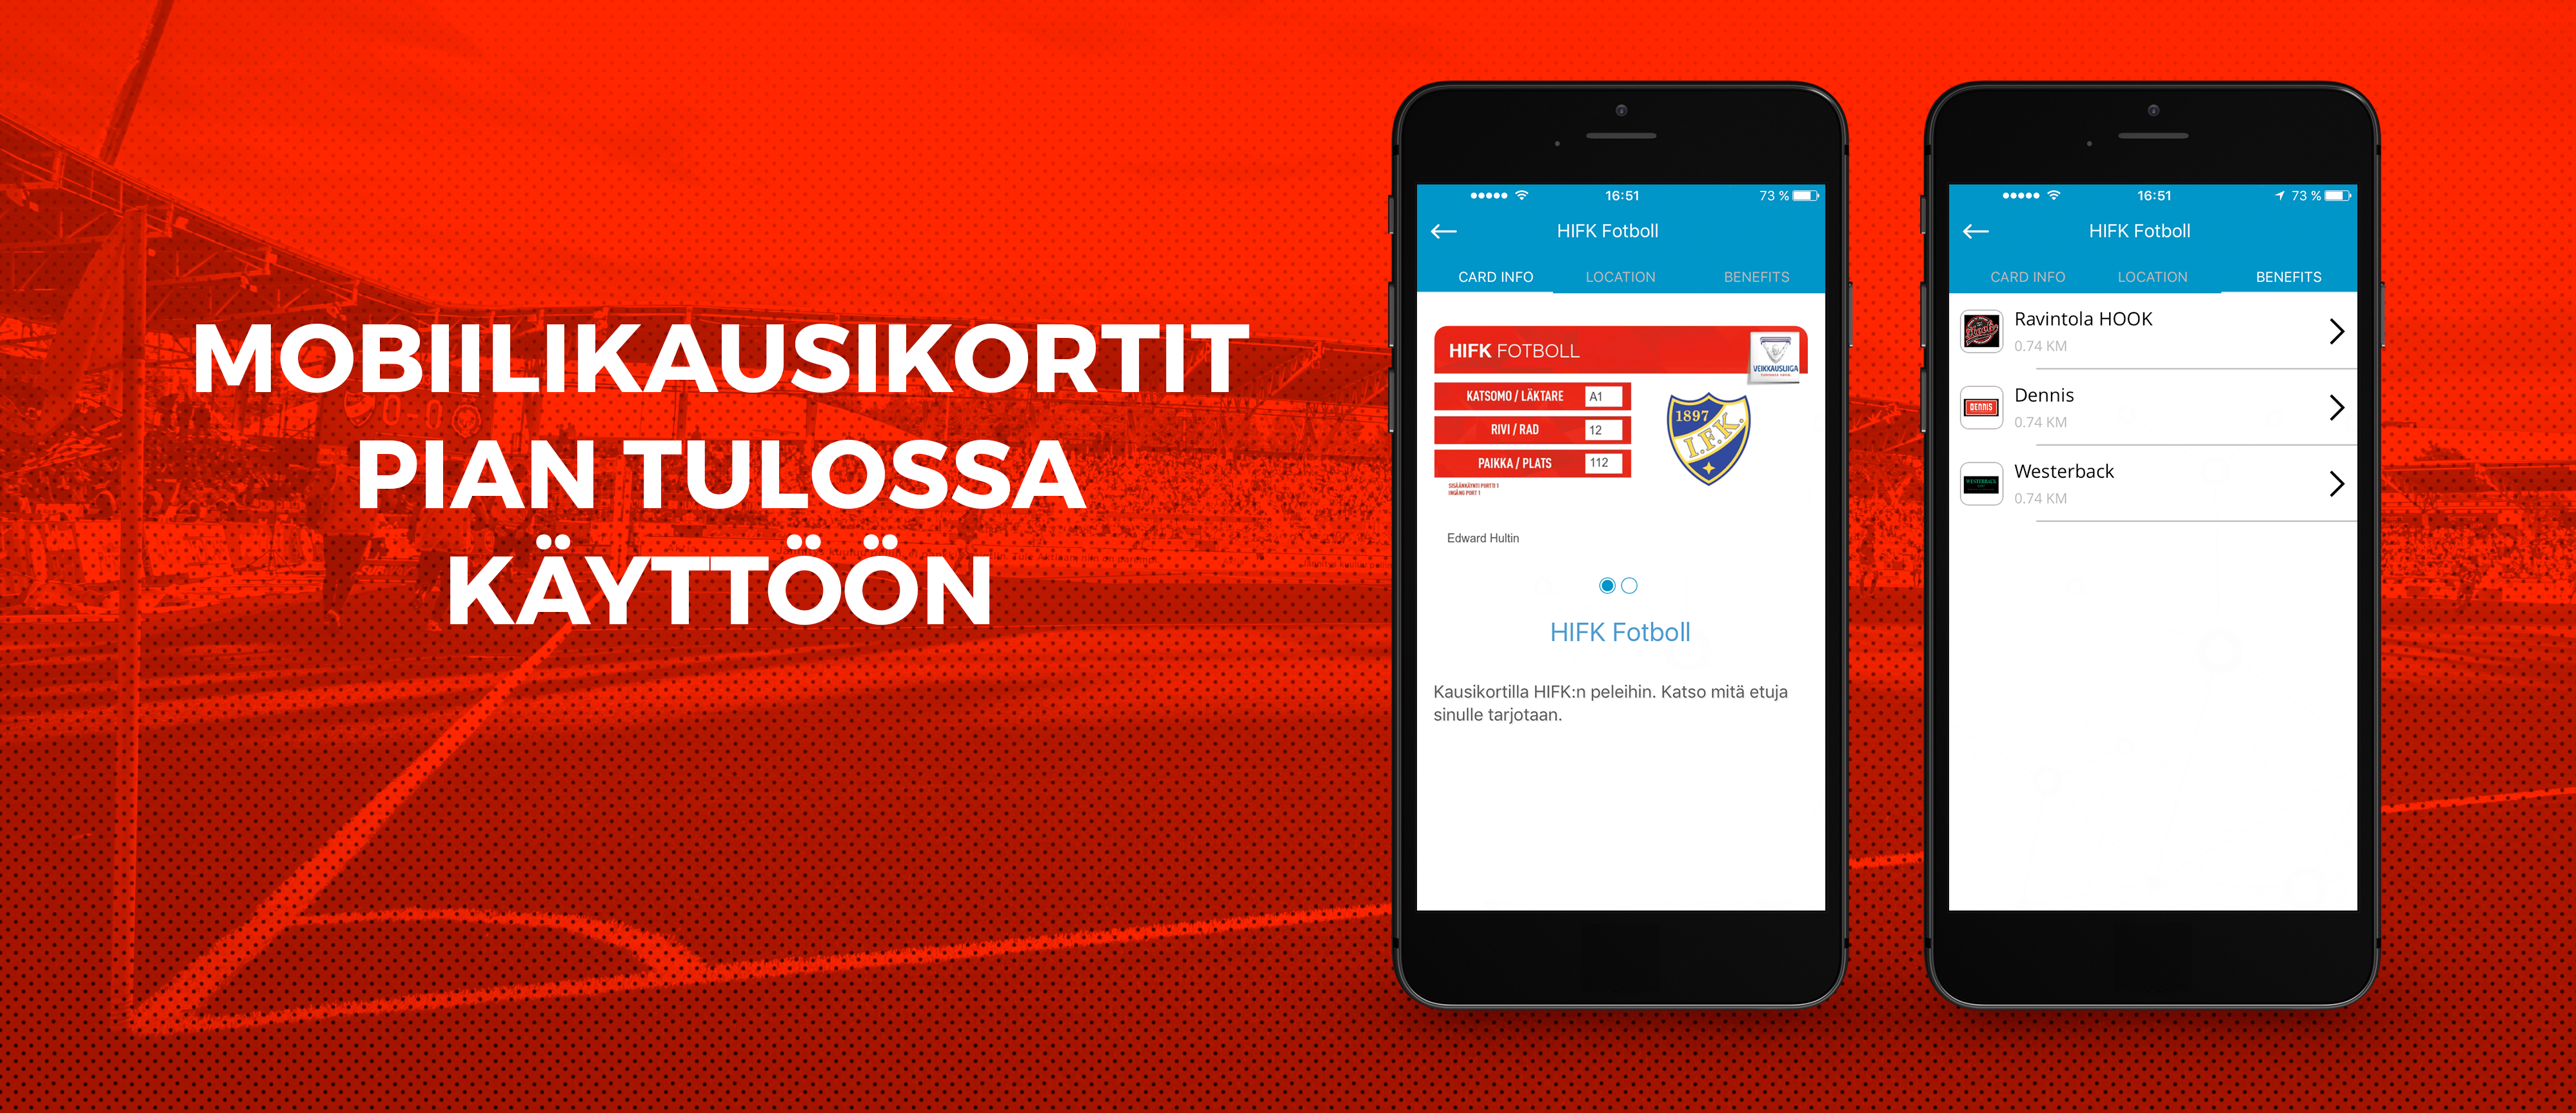 HIFK Fotboll ottaa käyttöön <br> mobiilikausikortin kaudelle 2017